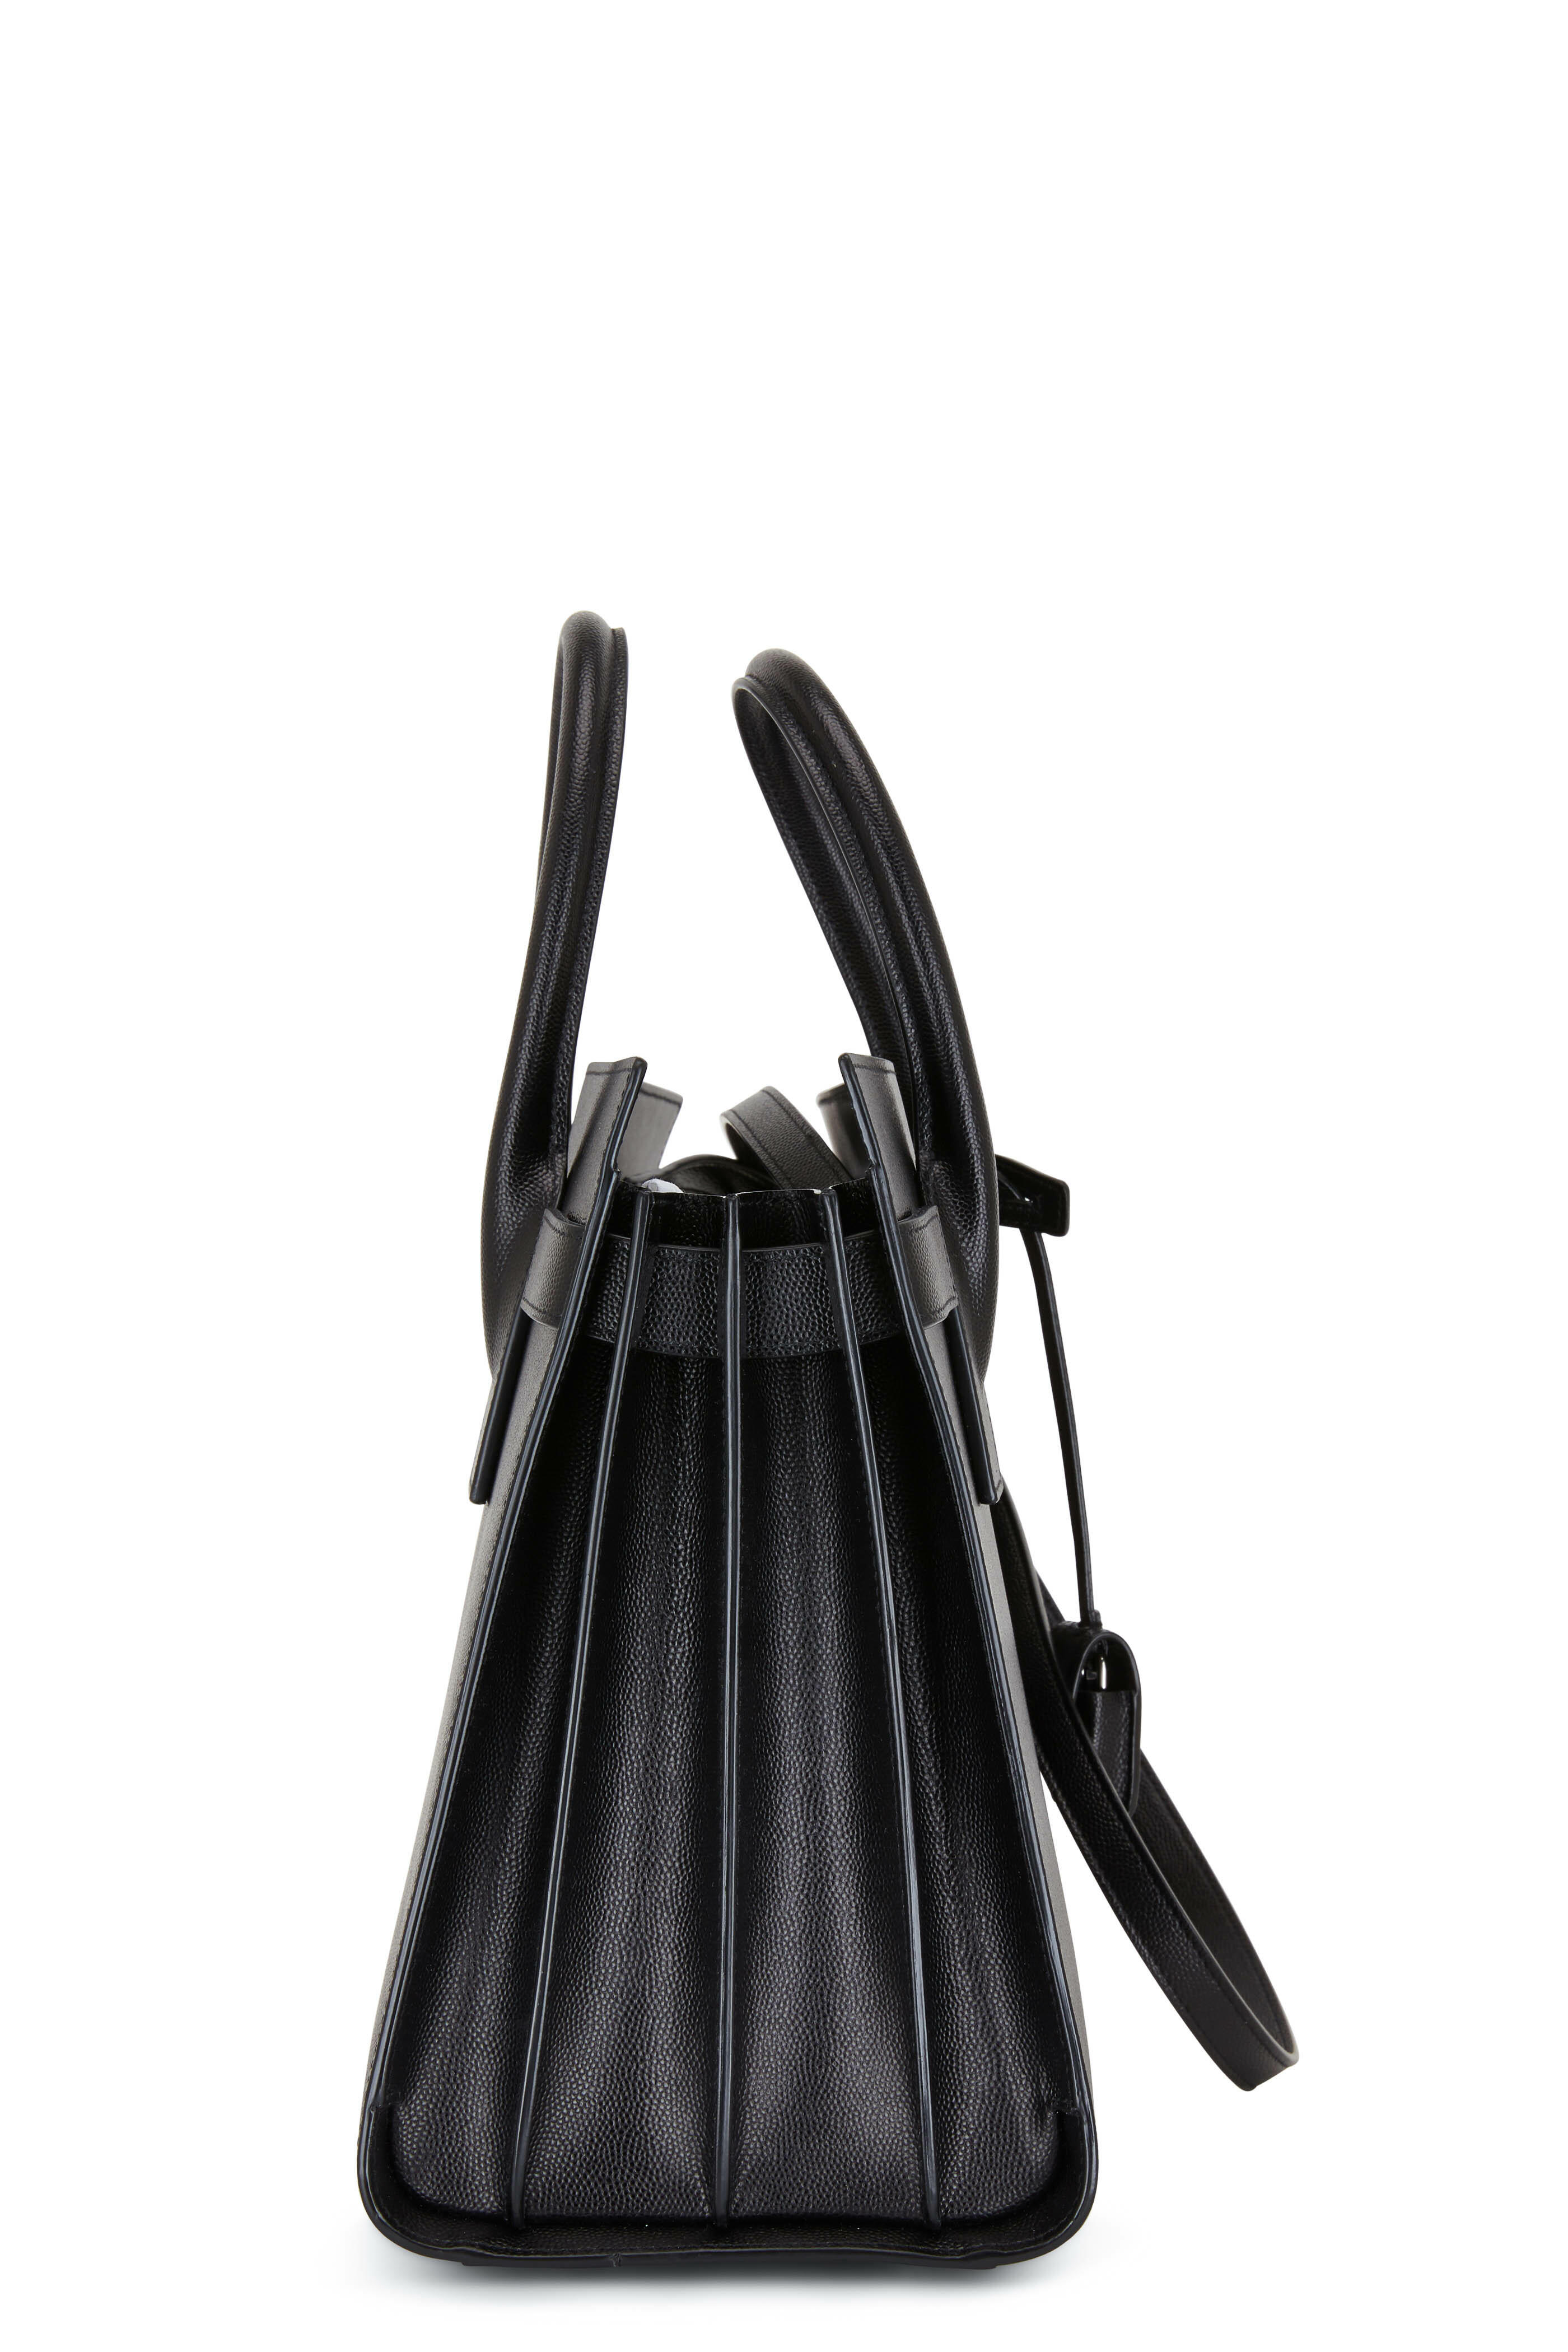 Saint Laurent Nano Sac De Jour in Black Patent/Calf Leather